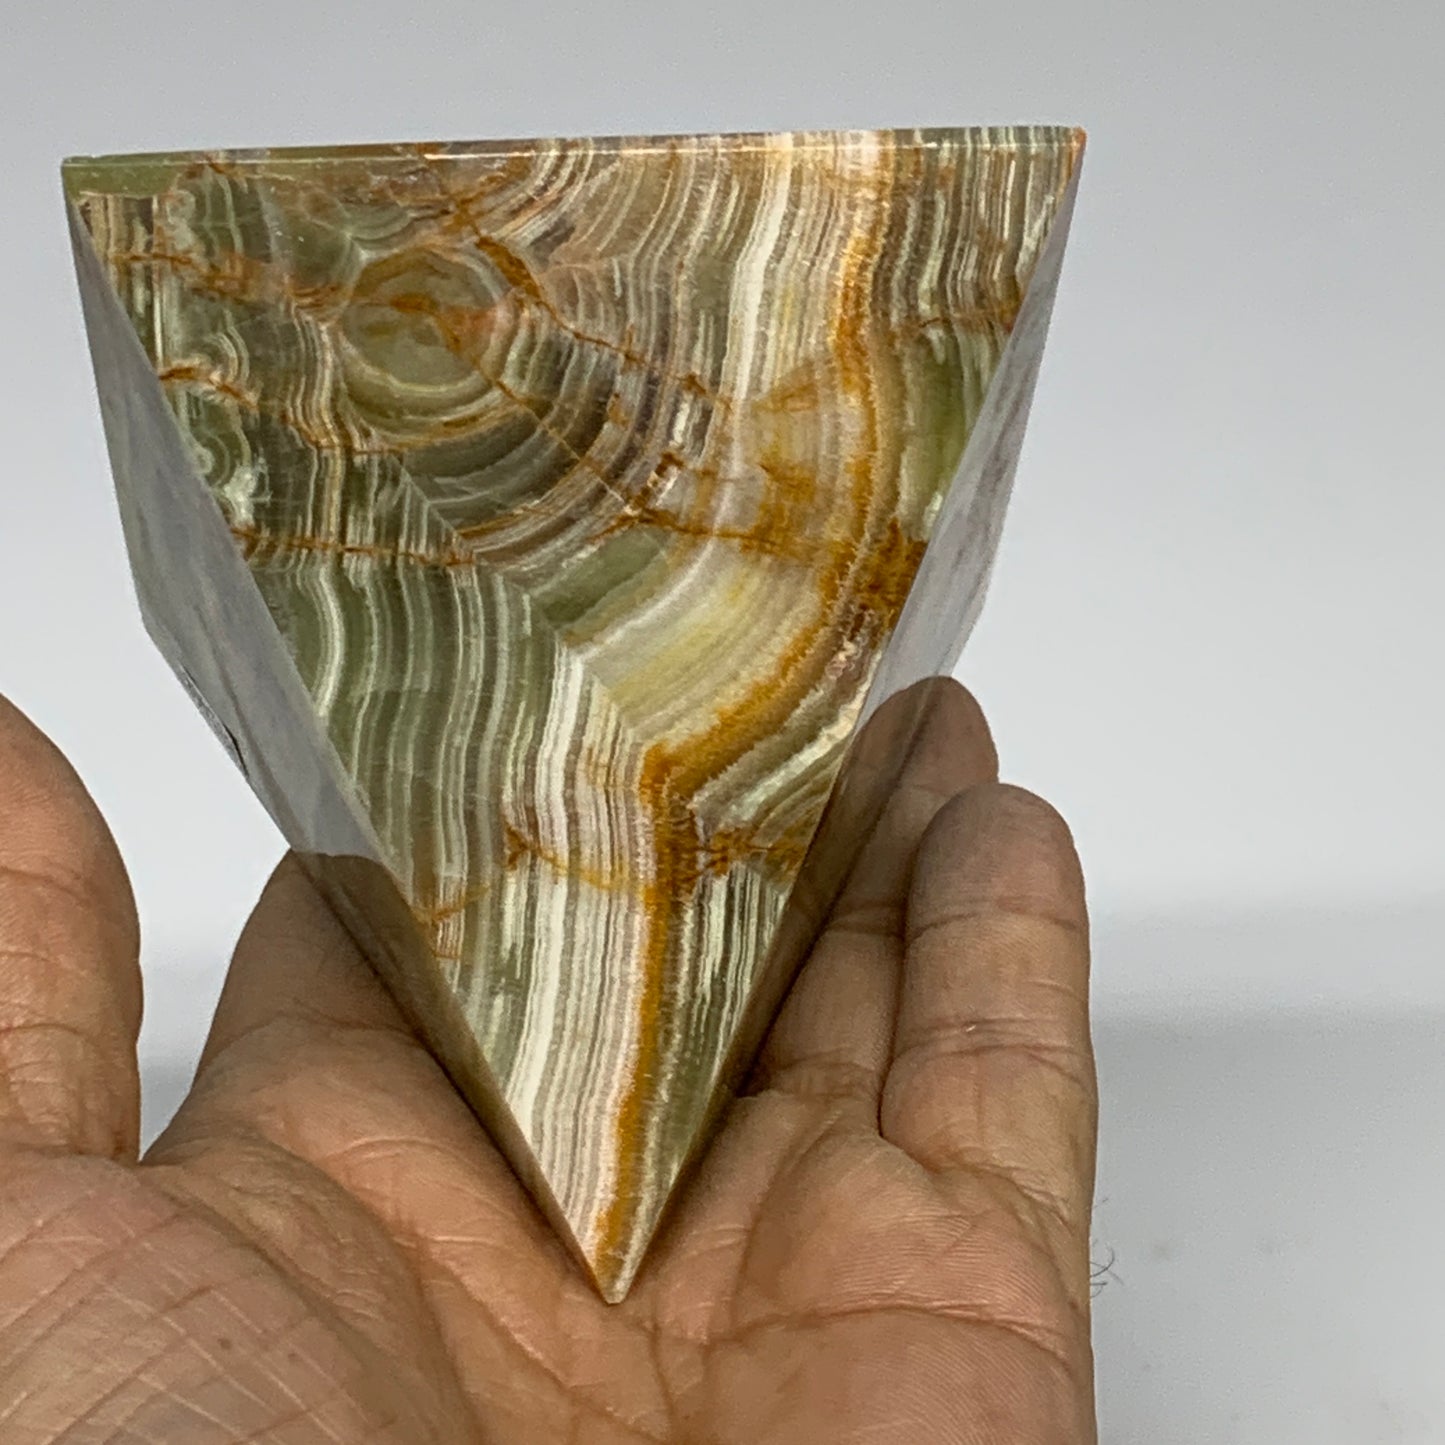 0.97 lbs, 3"x2.9"x2.9", Green Onyx Pyramid Gemstone Crystal, B32468